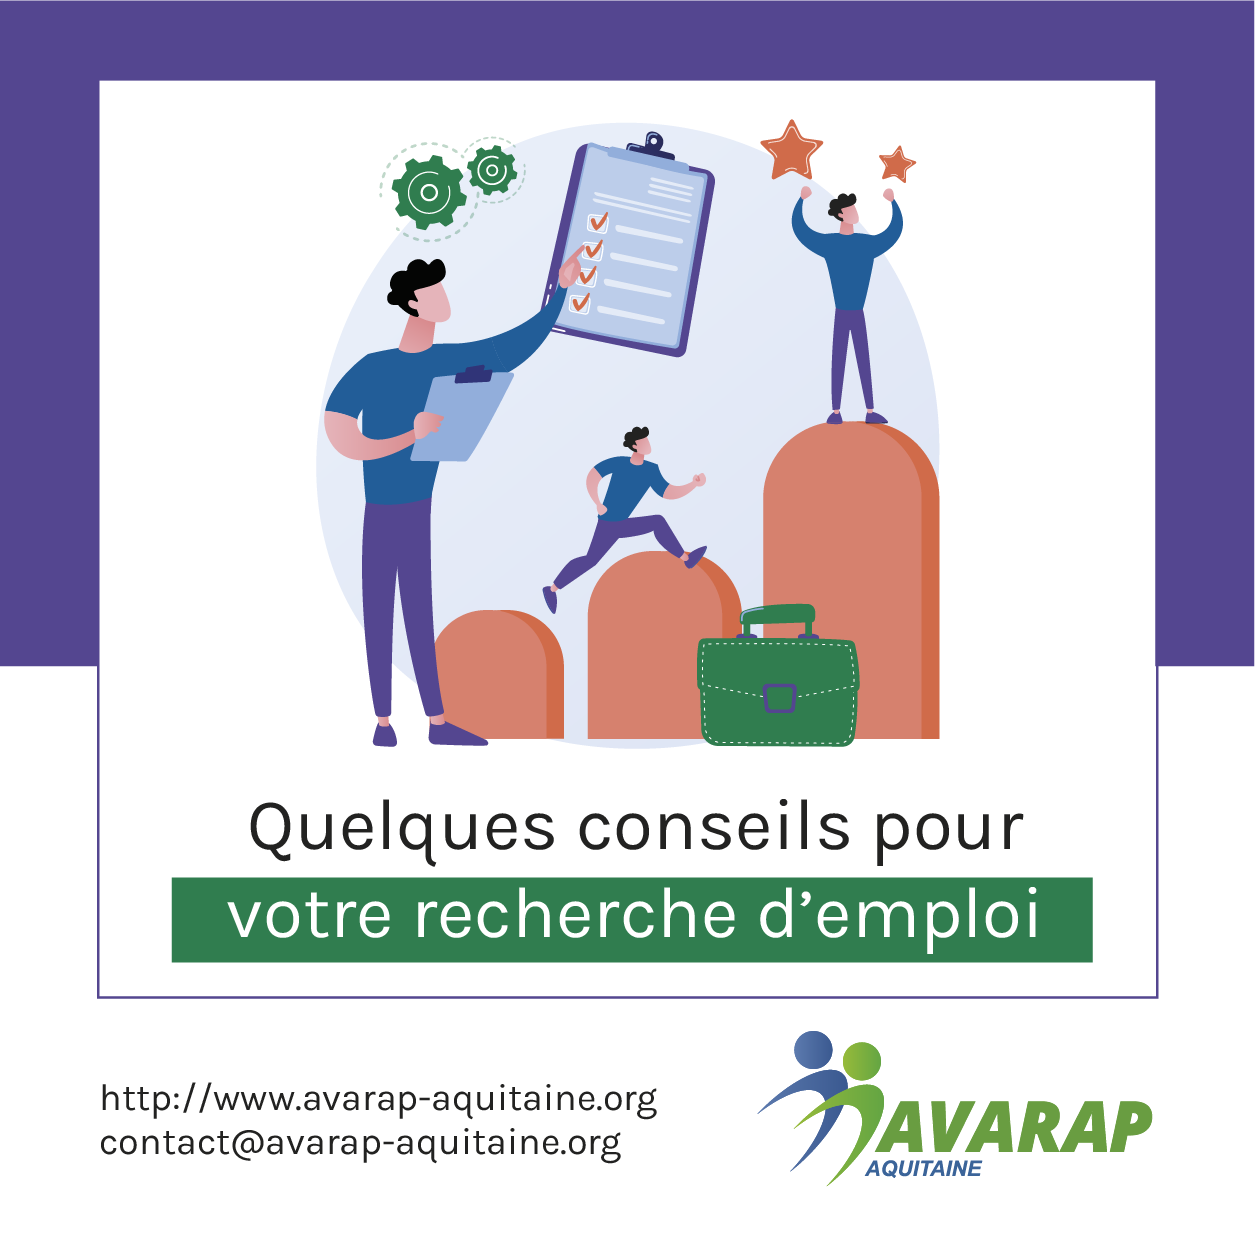 Support de communication digitale réalisé par Comm' Julie, pour l'Avarap Aquitaine.